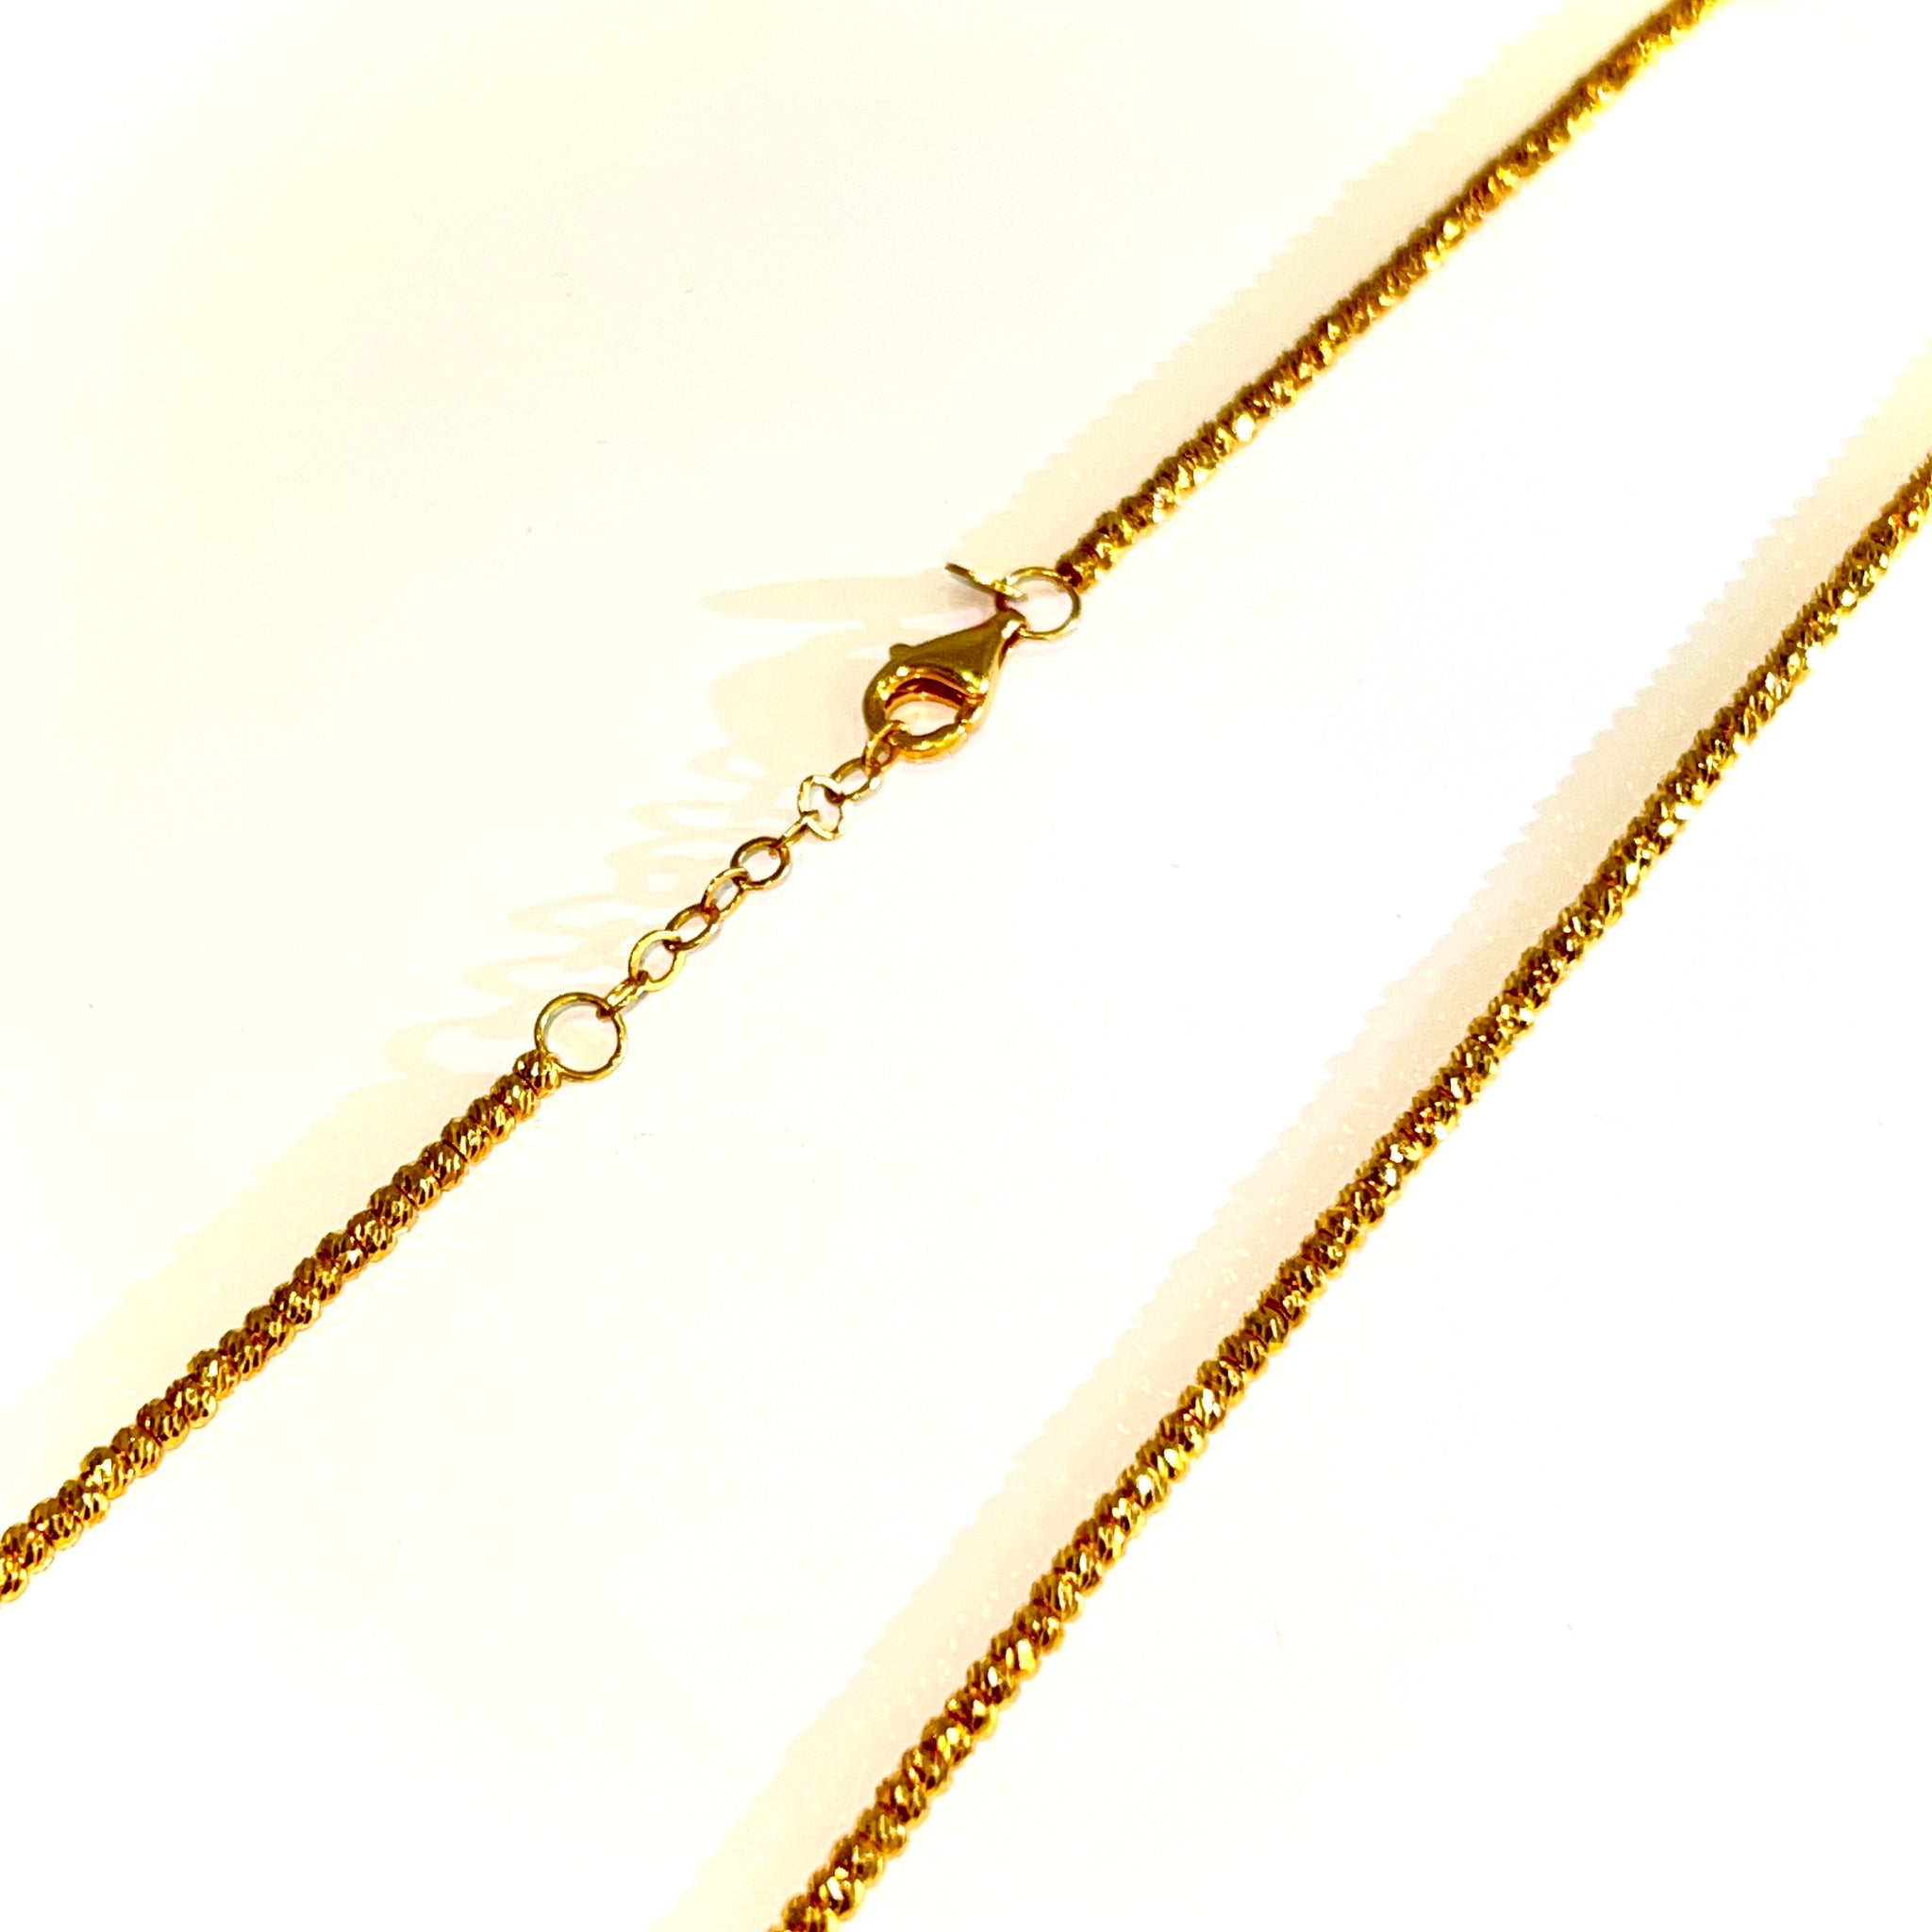 Mooncut Chain - 22 carat gold - 52cm / 2mm